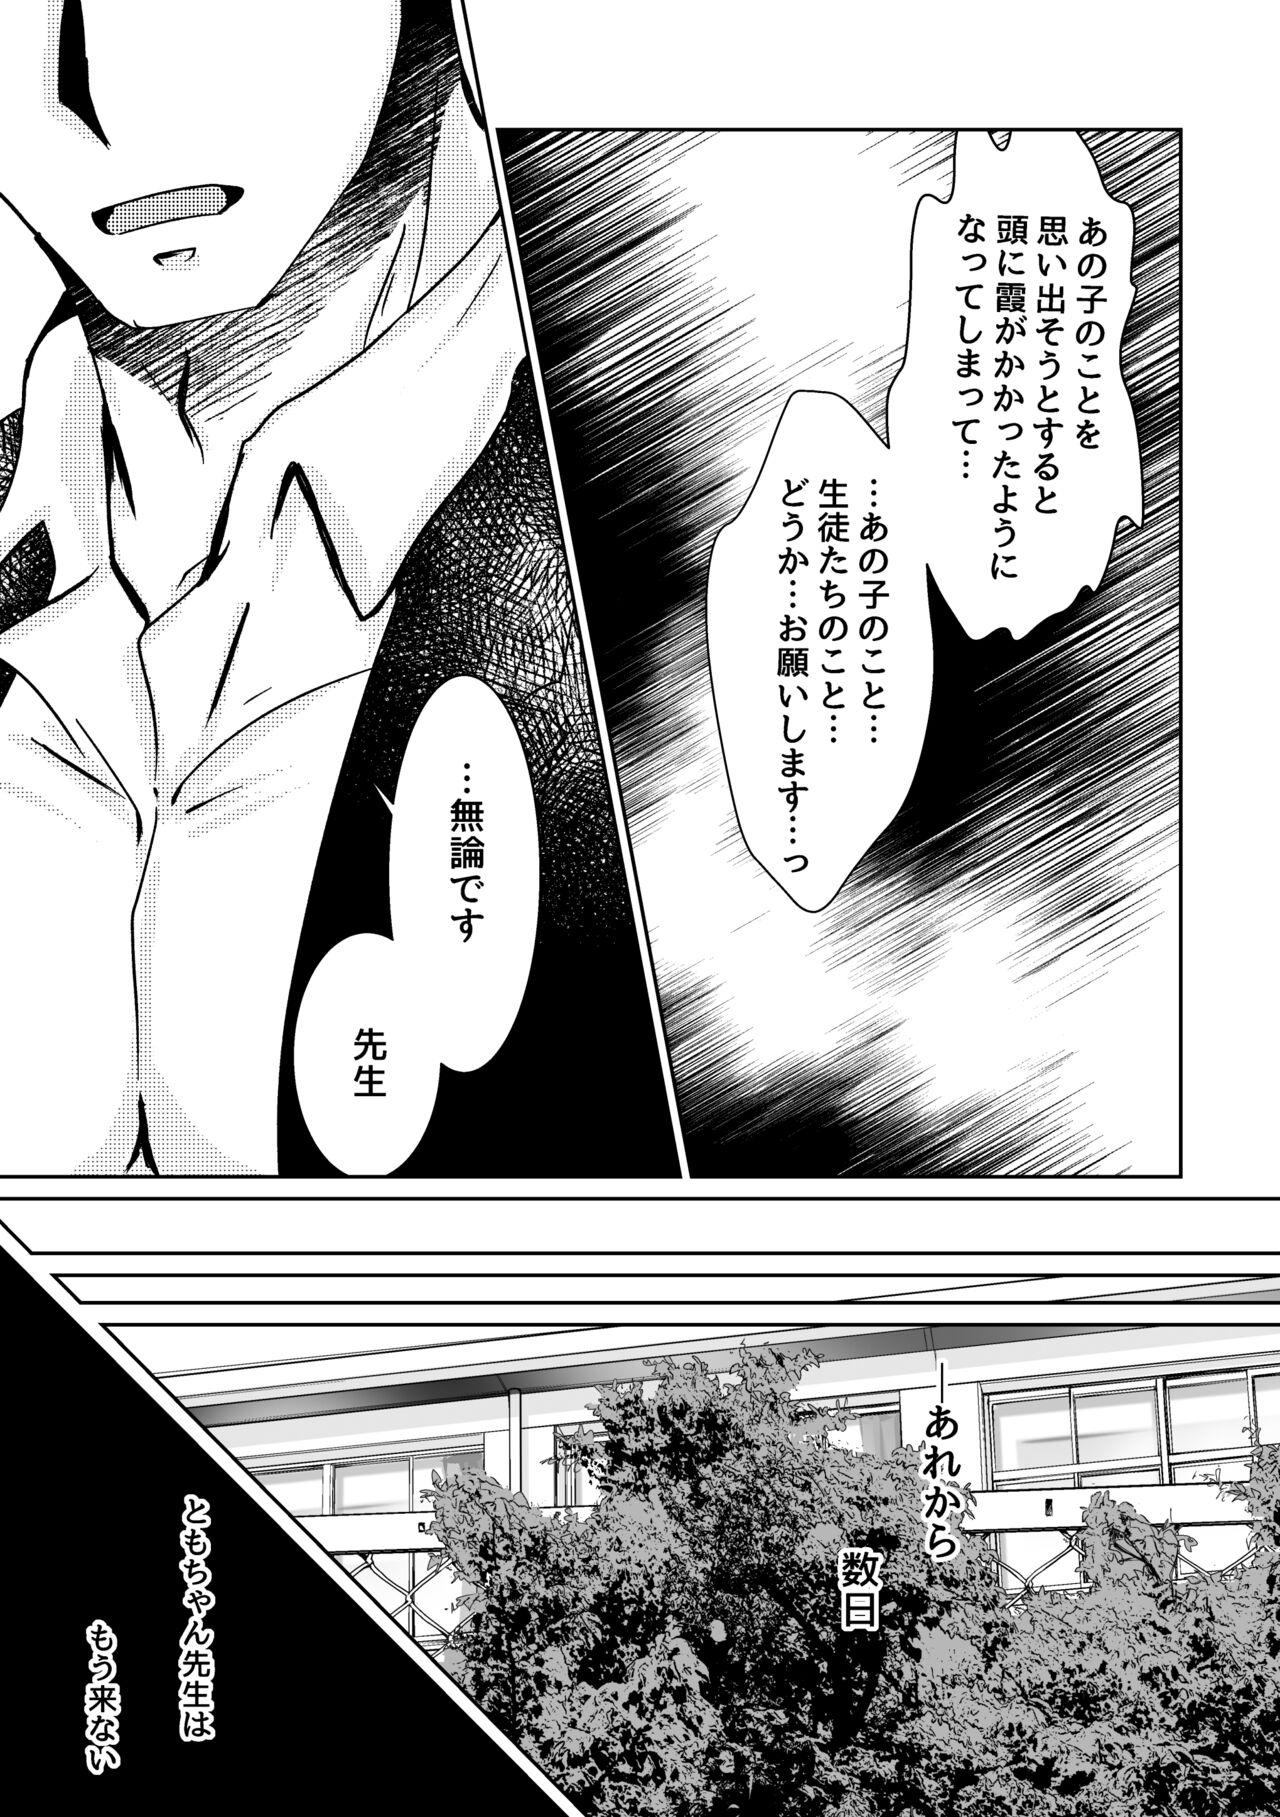 Work Kareya Yoru no Hanaka Episode 3 Abg - Page 3